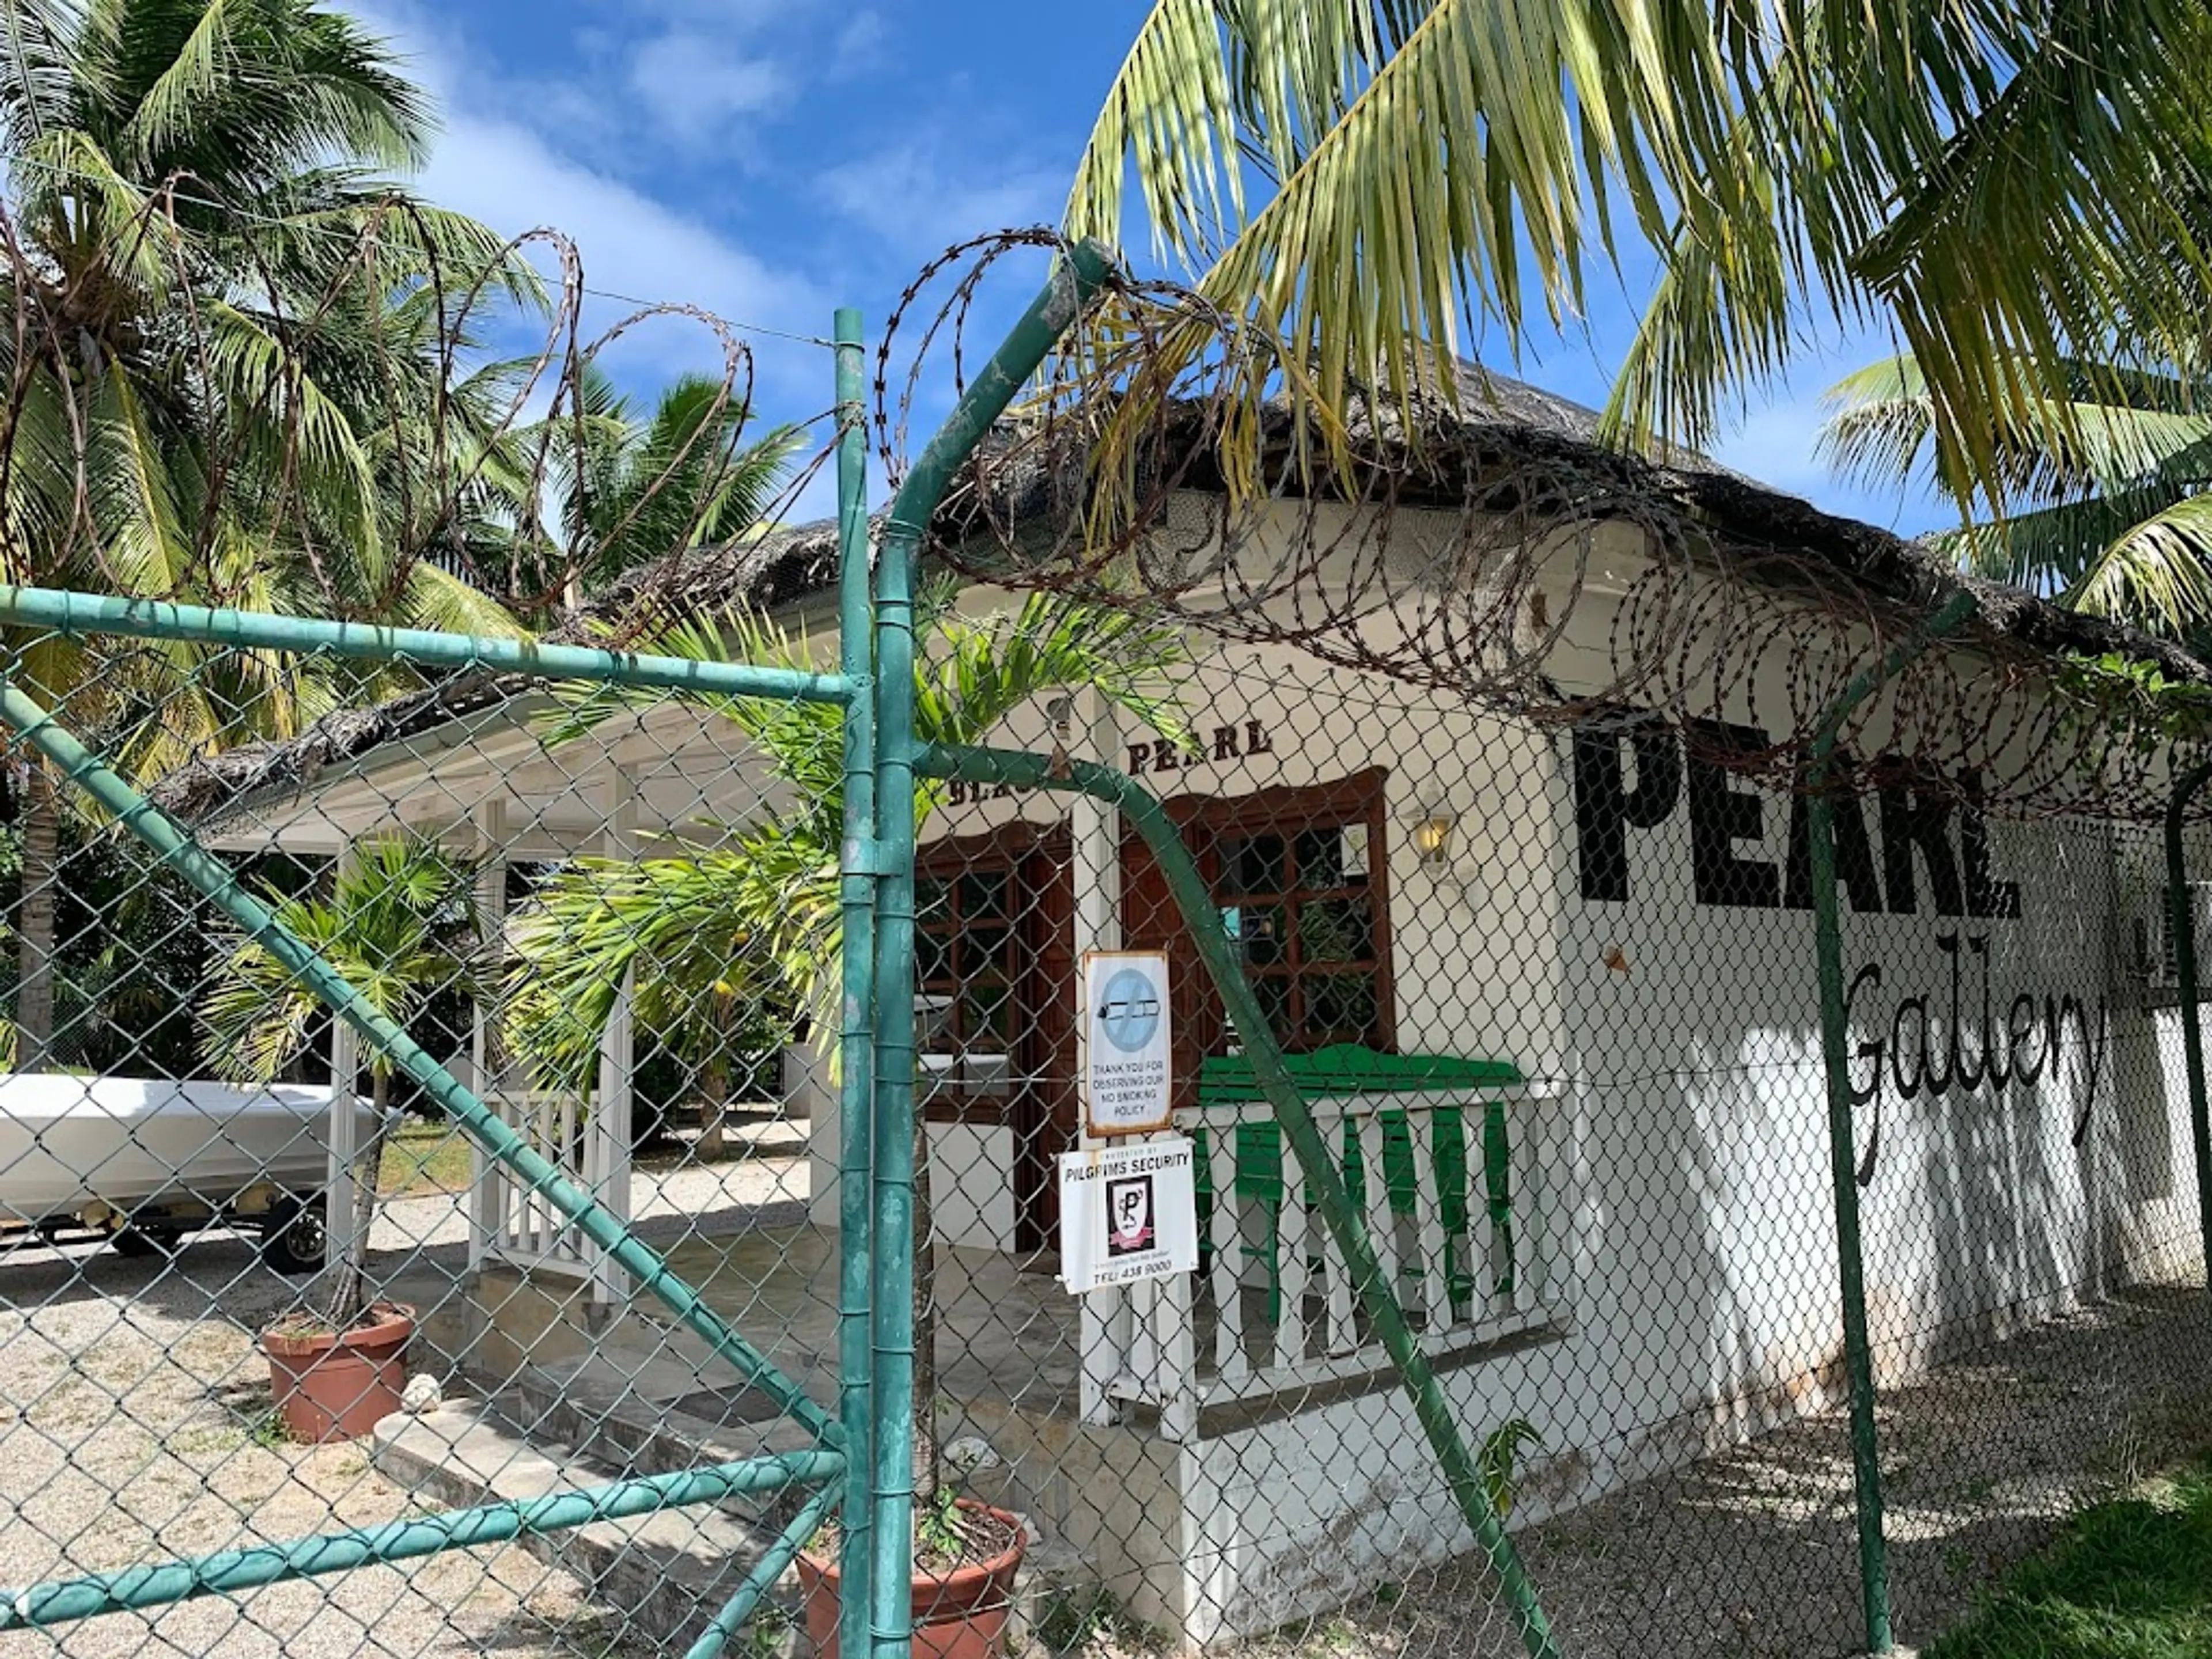 Pearl Farm